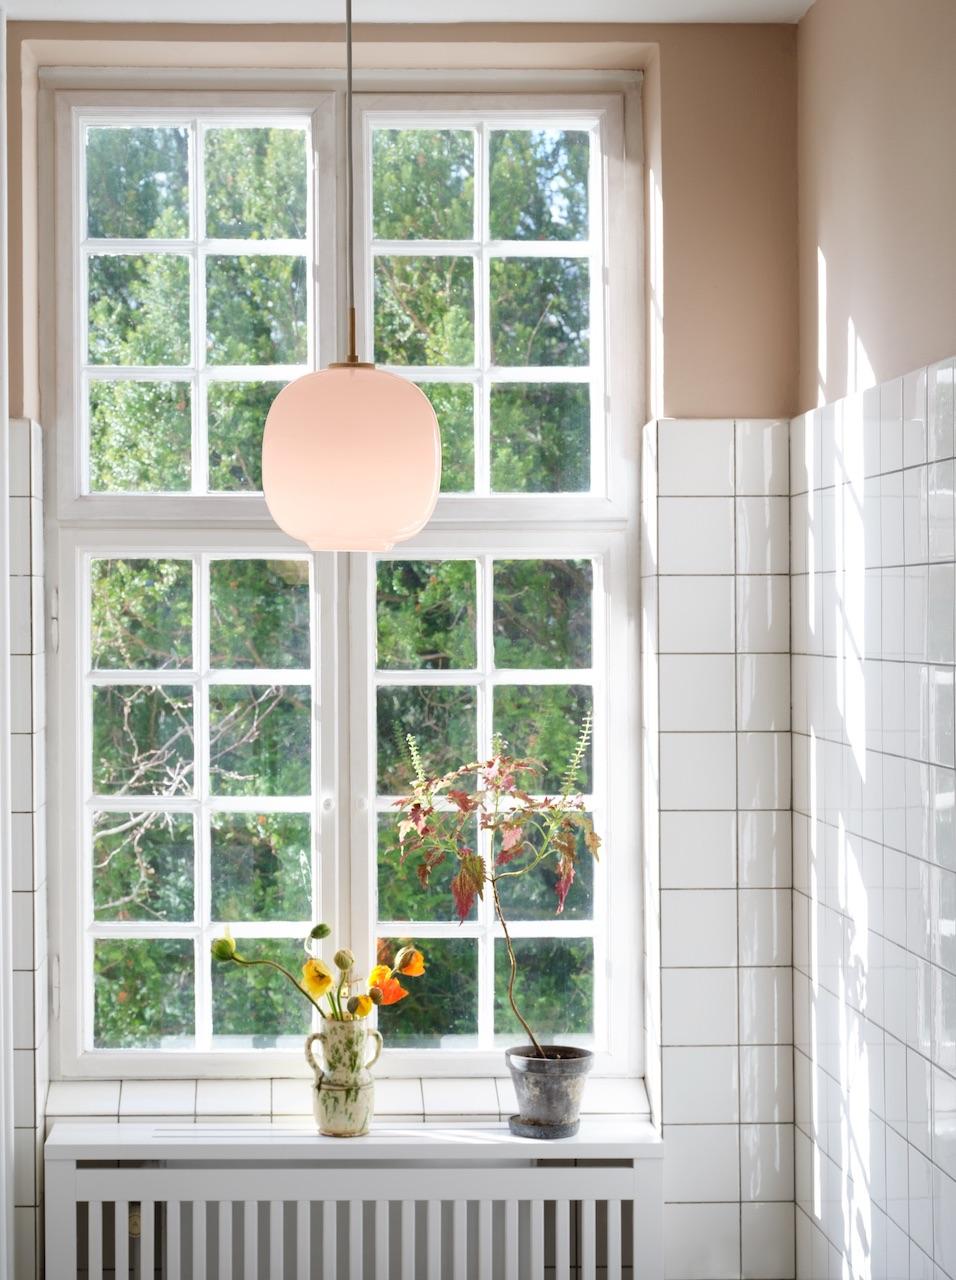 丹麥百年燈具品牌Louis Poulsen，旗下淡粉色的Pale Rose系列燈具